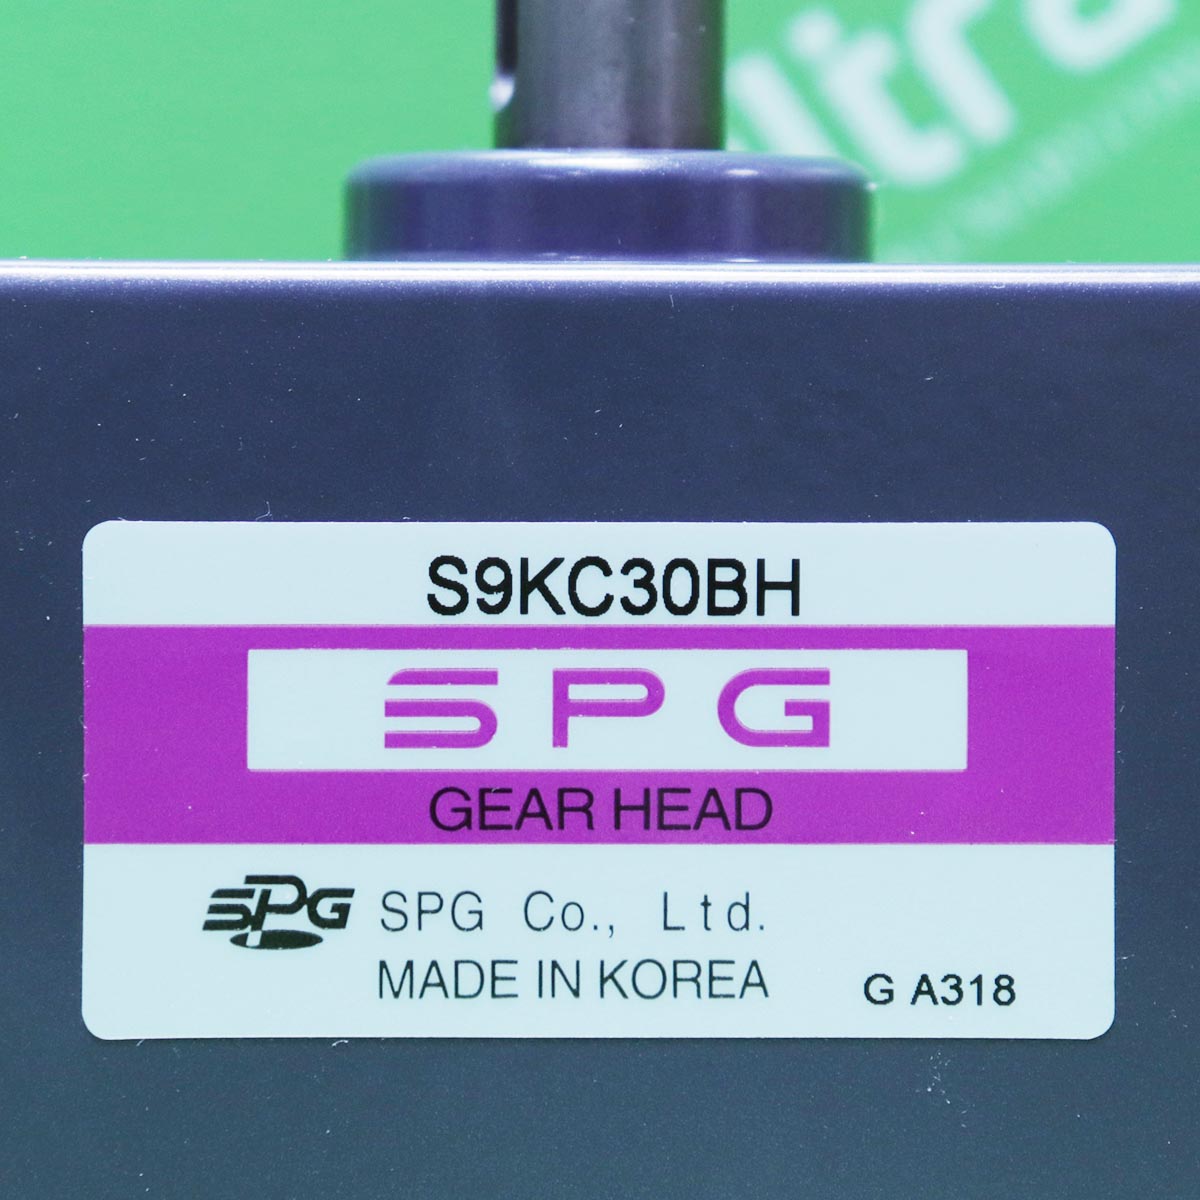 [신품] S9KC30BH SPG (에스피지) 90mm 키타입 1:30 기어헤드 (납기 : 전화 문의)